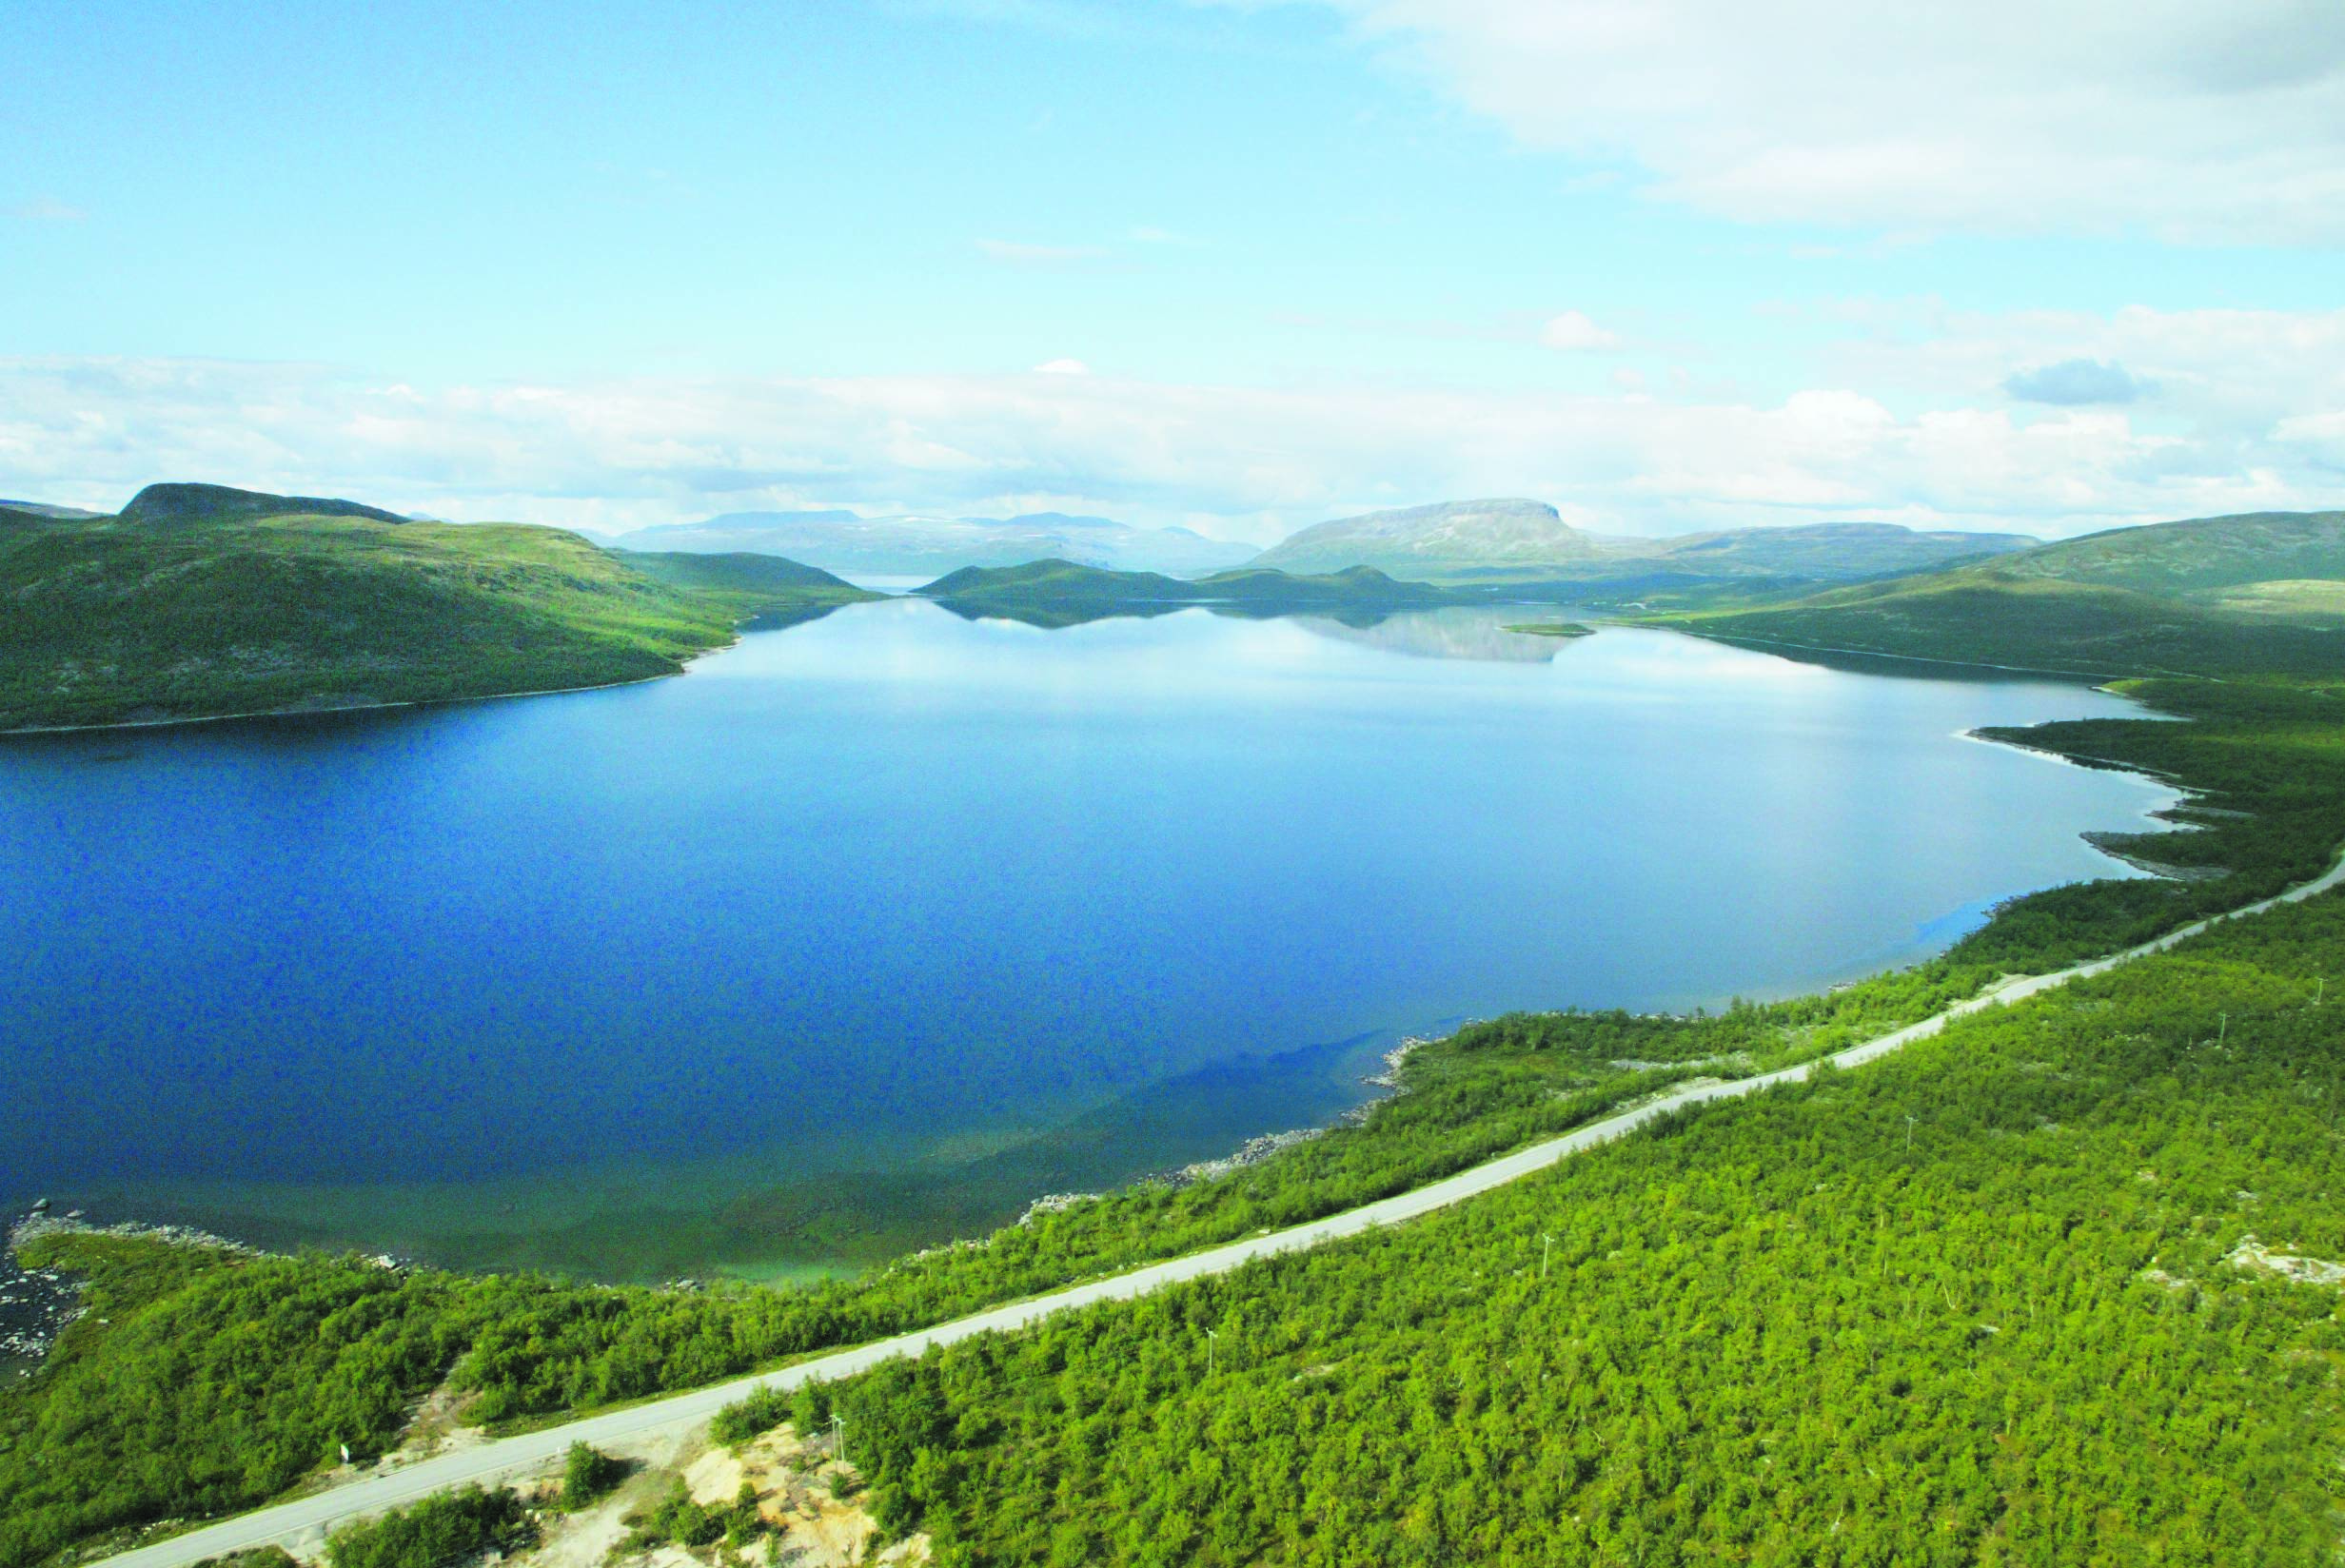 Landschaftsaufnahme mit einem blauen See sowie Fjells und Bergen am Horizont